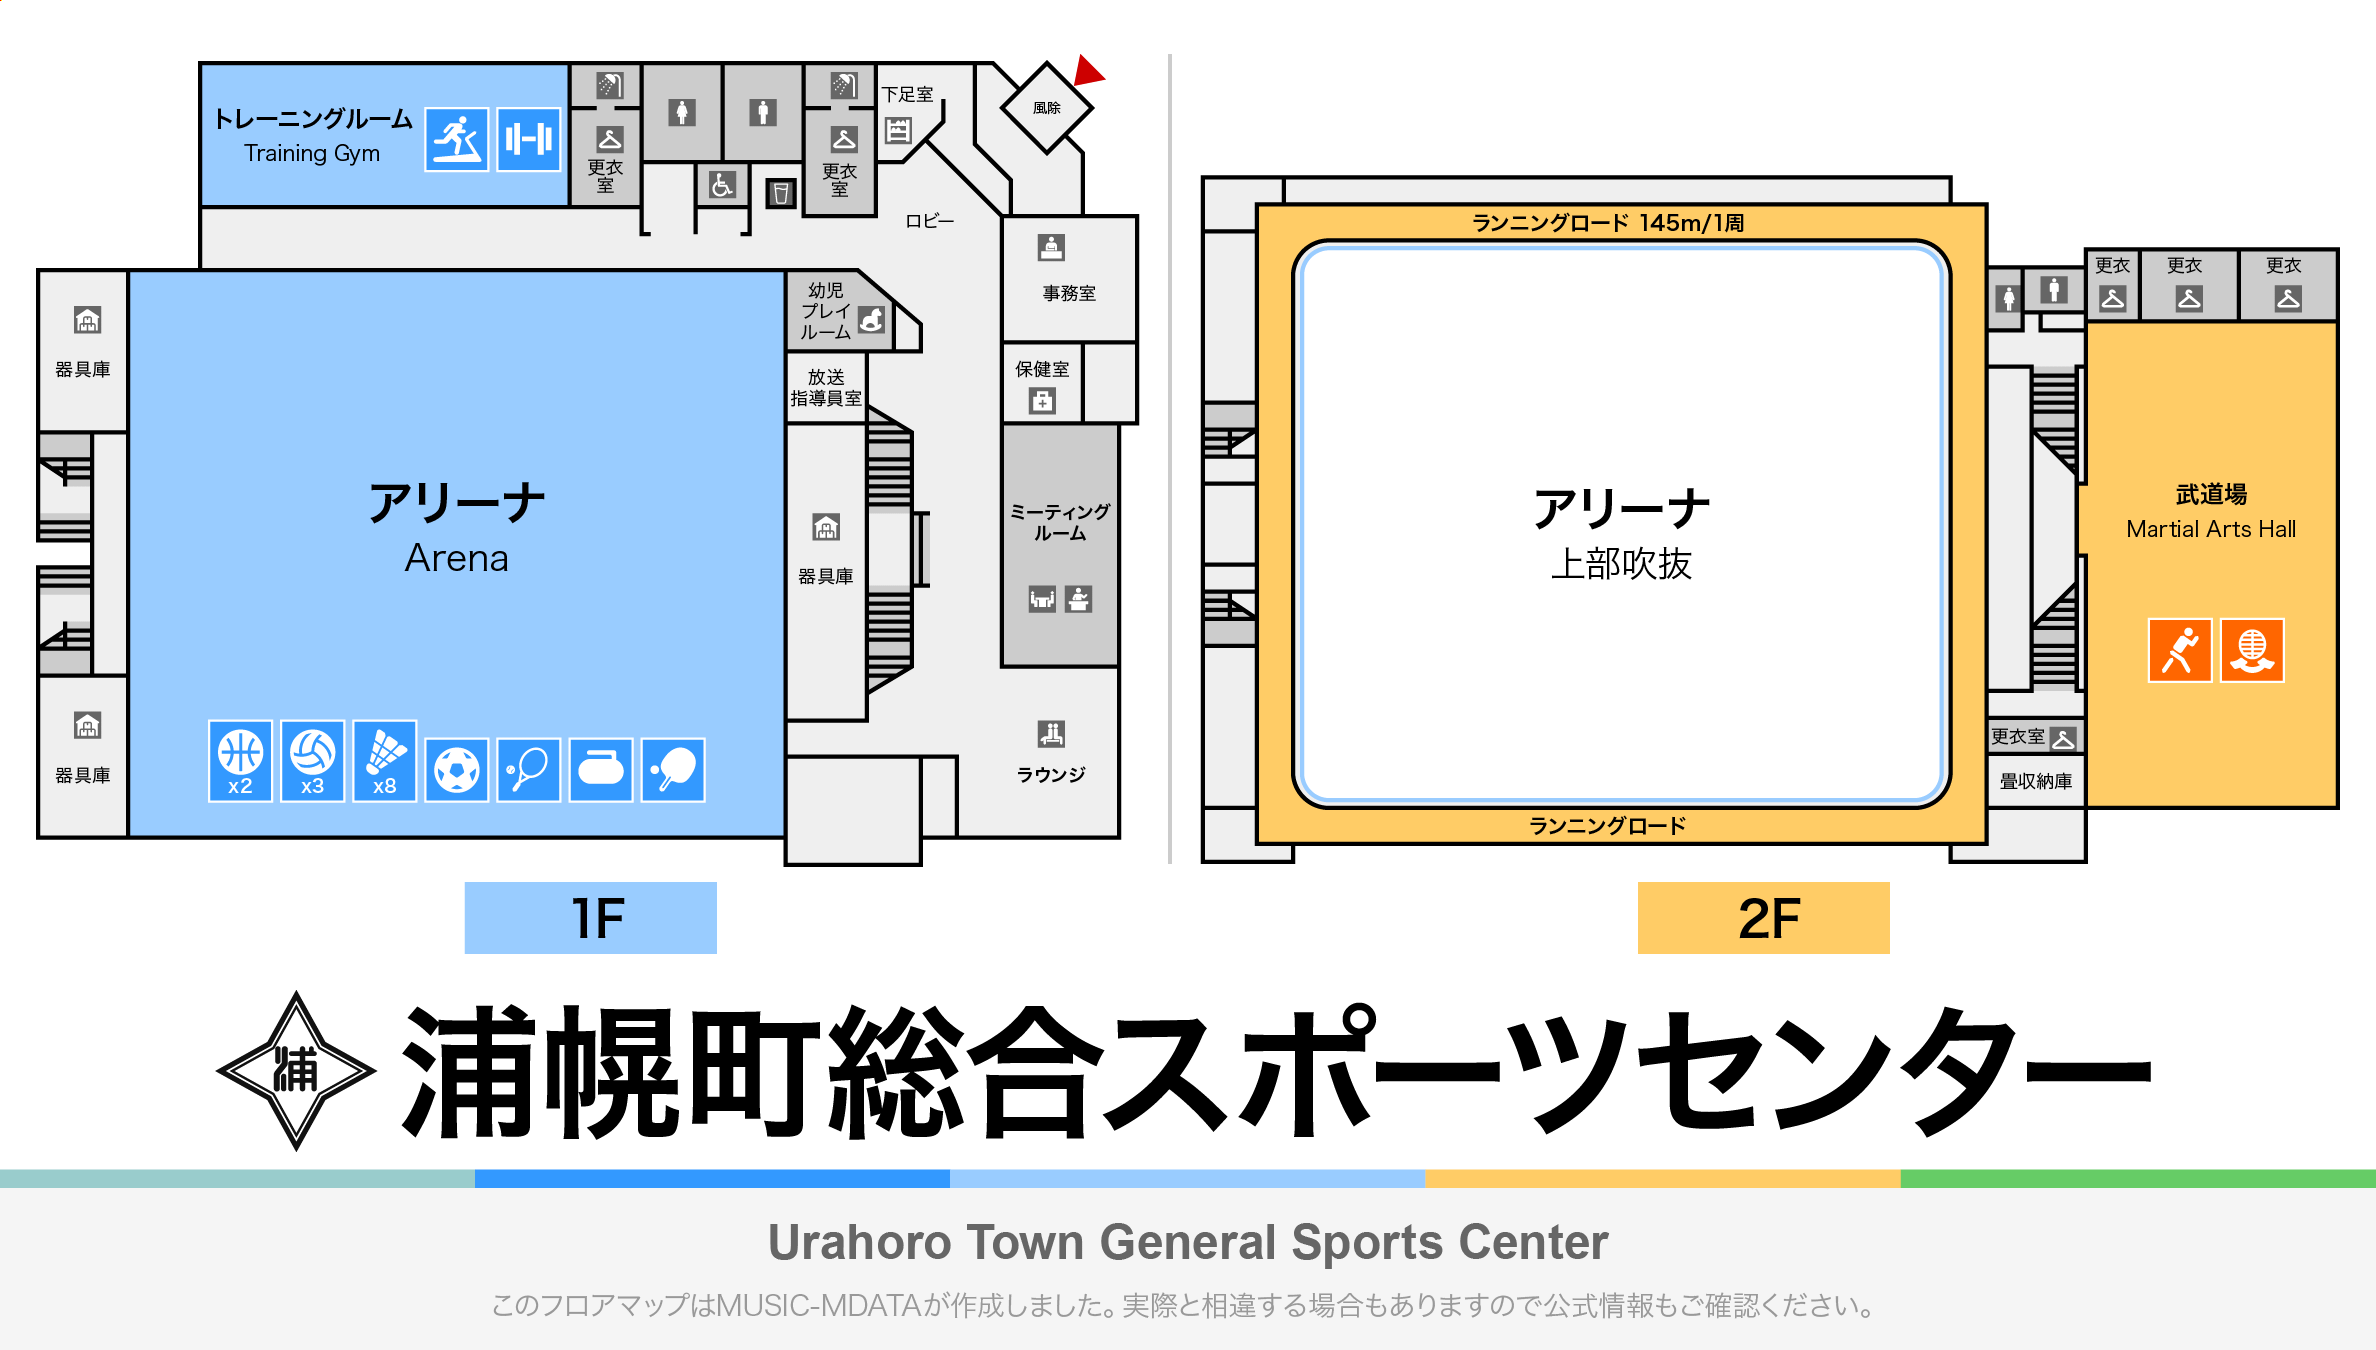 浦幌町総合スポーツセンターのフロアマップ・体育館